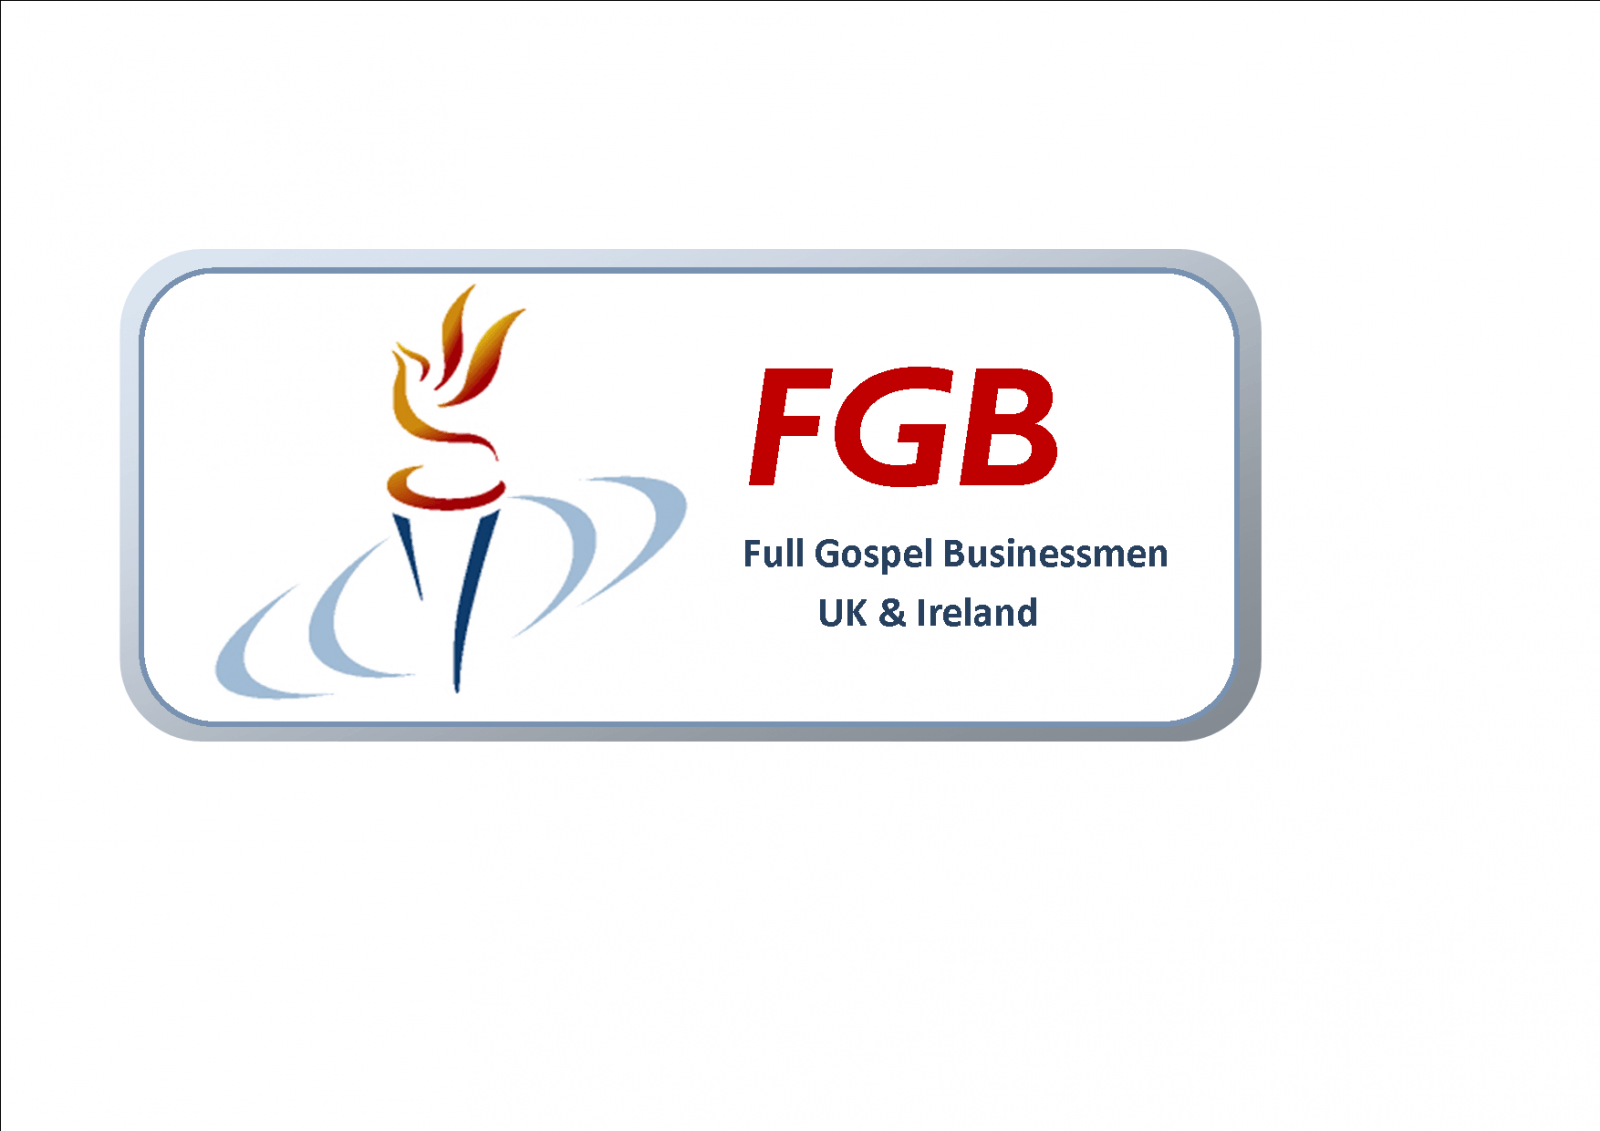 Here Logo - Logos and Image. FGB UK & Ireland